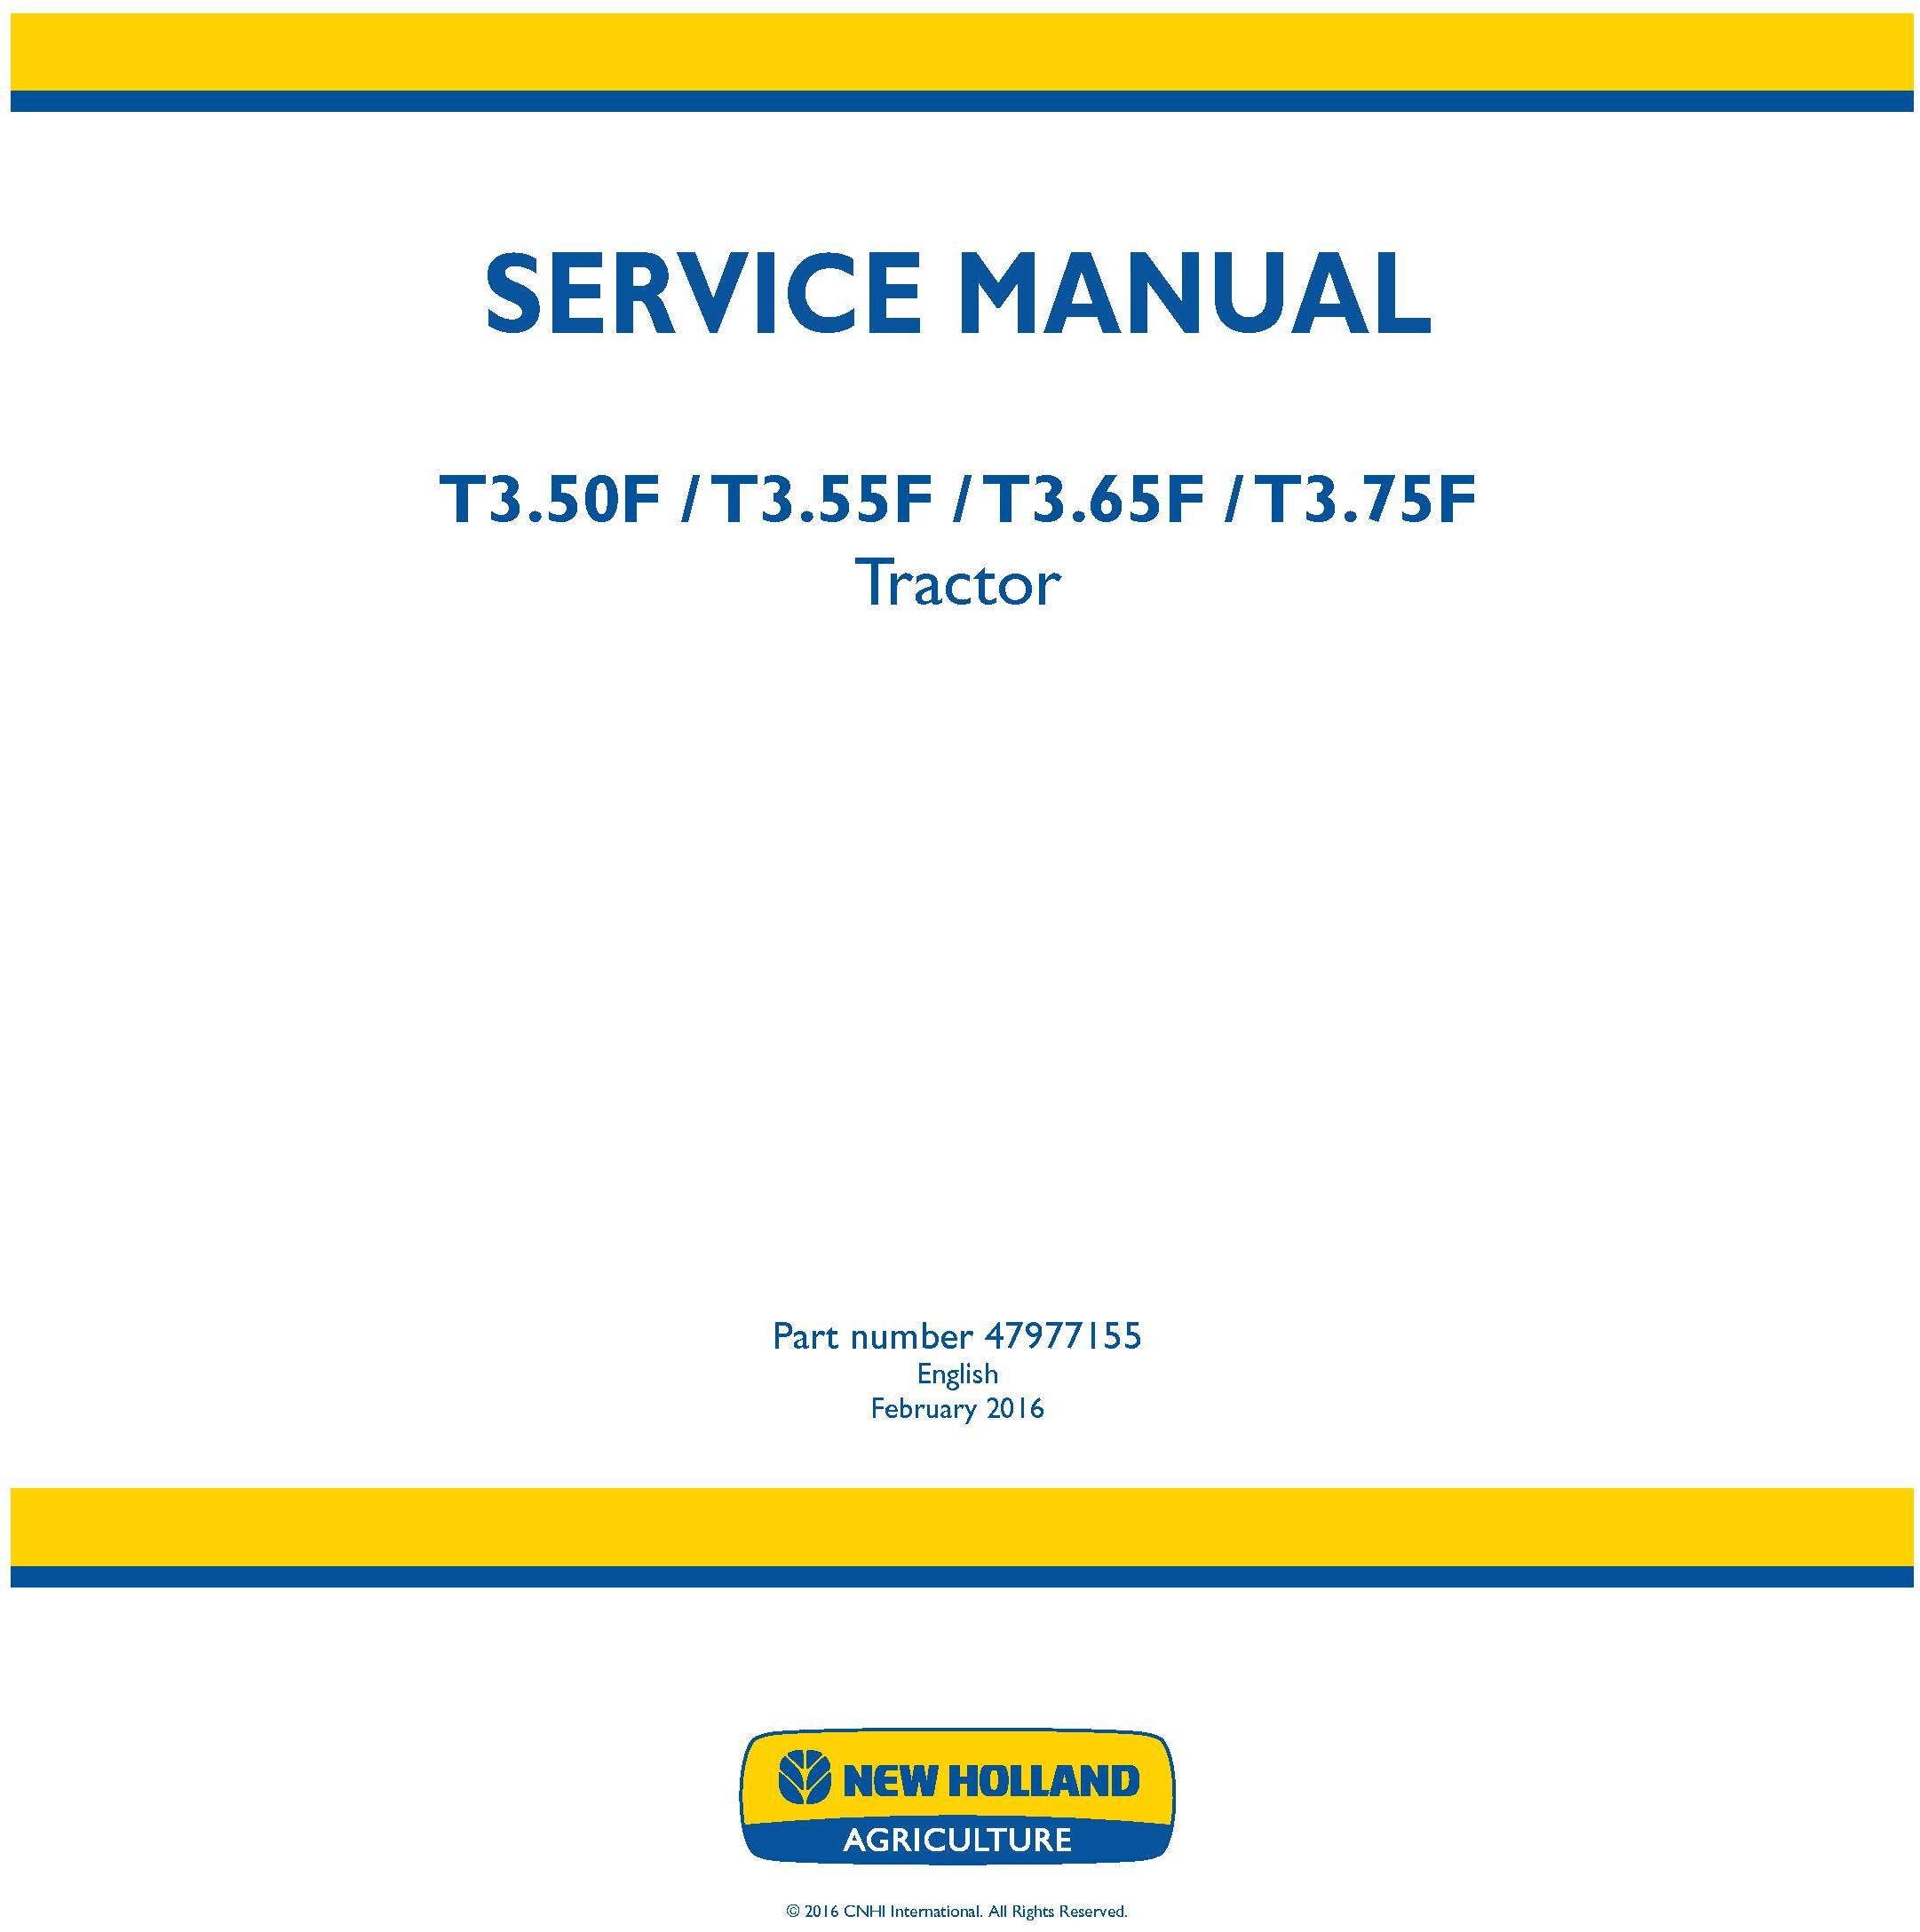 New Holland T3.50F, T3.55F, T3.65F, T3.75F Tractor Service Manual - 19476